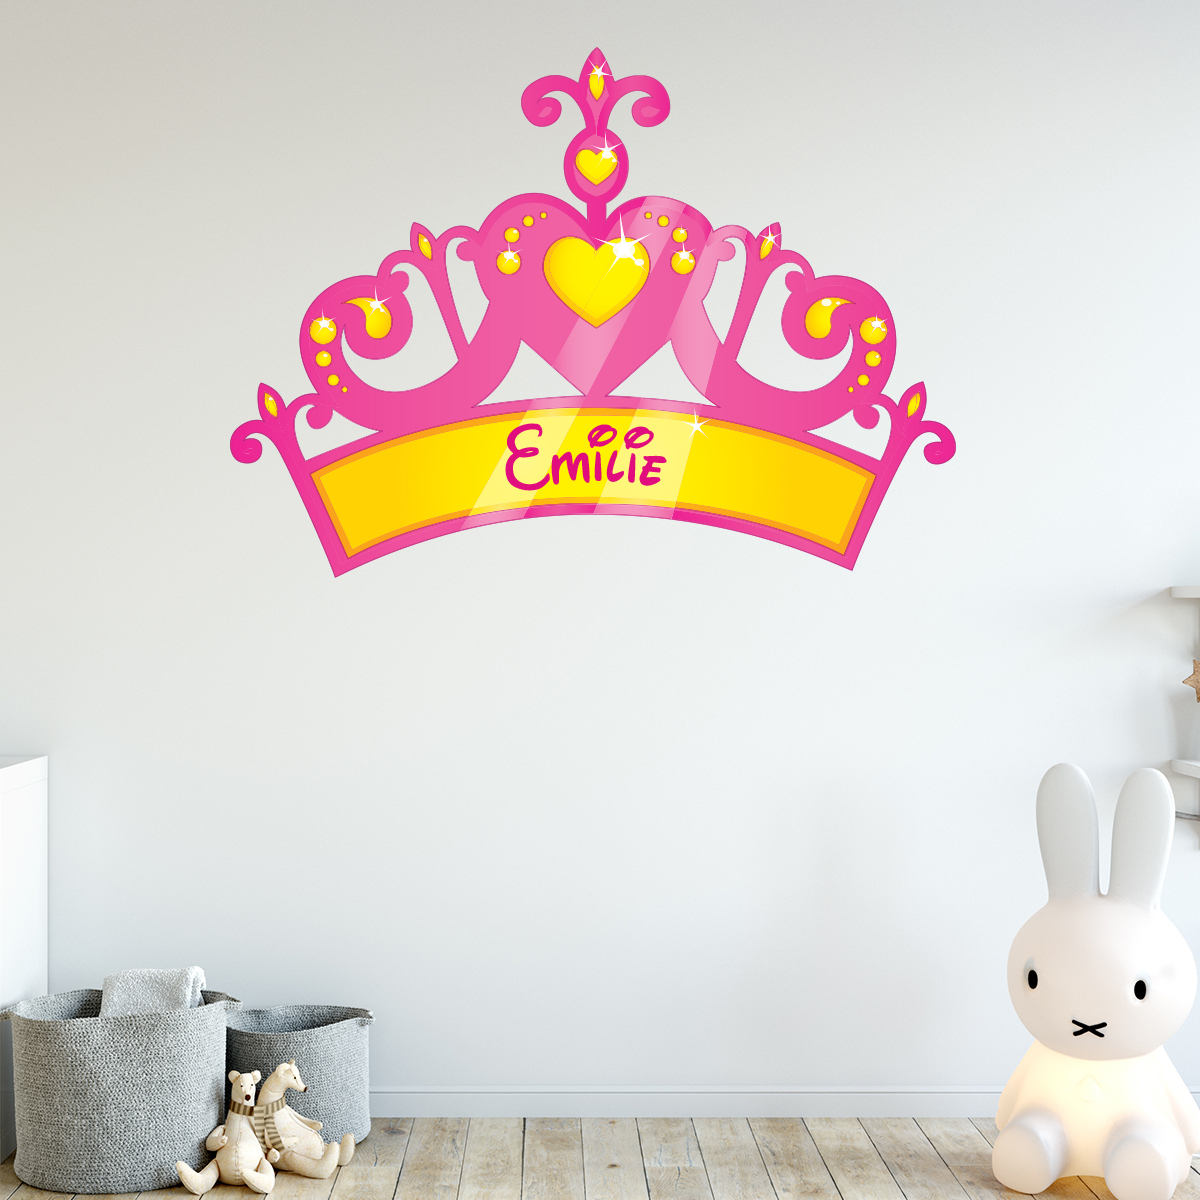 Kinderzimmer Wandtattoo Namen Prinz für Jungen mit 👑 Krone gestalten